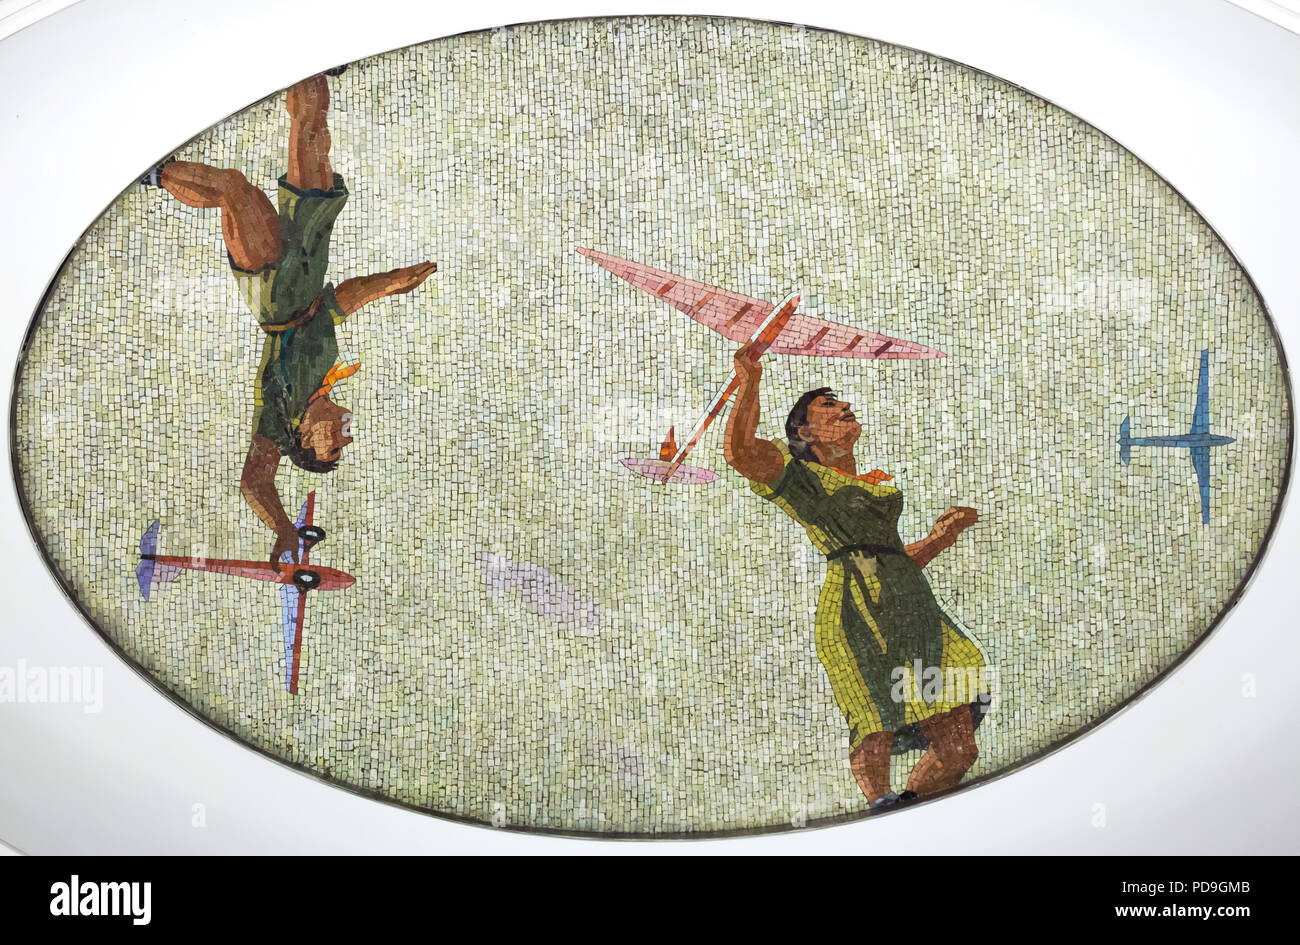 Sowjetische Pioniere sind eingerückt aeromodeling in der Decke Mosaik von sowjetischen Künstler Alexander Deyneka im U-Bahnhof Majakowskaja in Moskau, Rußland, mit dargestellt. Eines der Mosaike aus der dargelegten vierundzwanzig Stunden in den sowjetischen Luftraum von Russischen Mosaik master Vladimir Frolov im Jahre 1930 montiert. Stockfoto